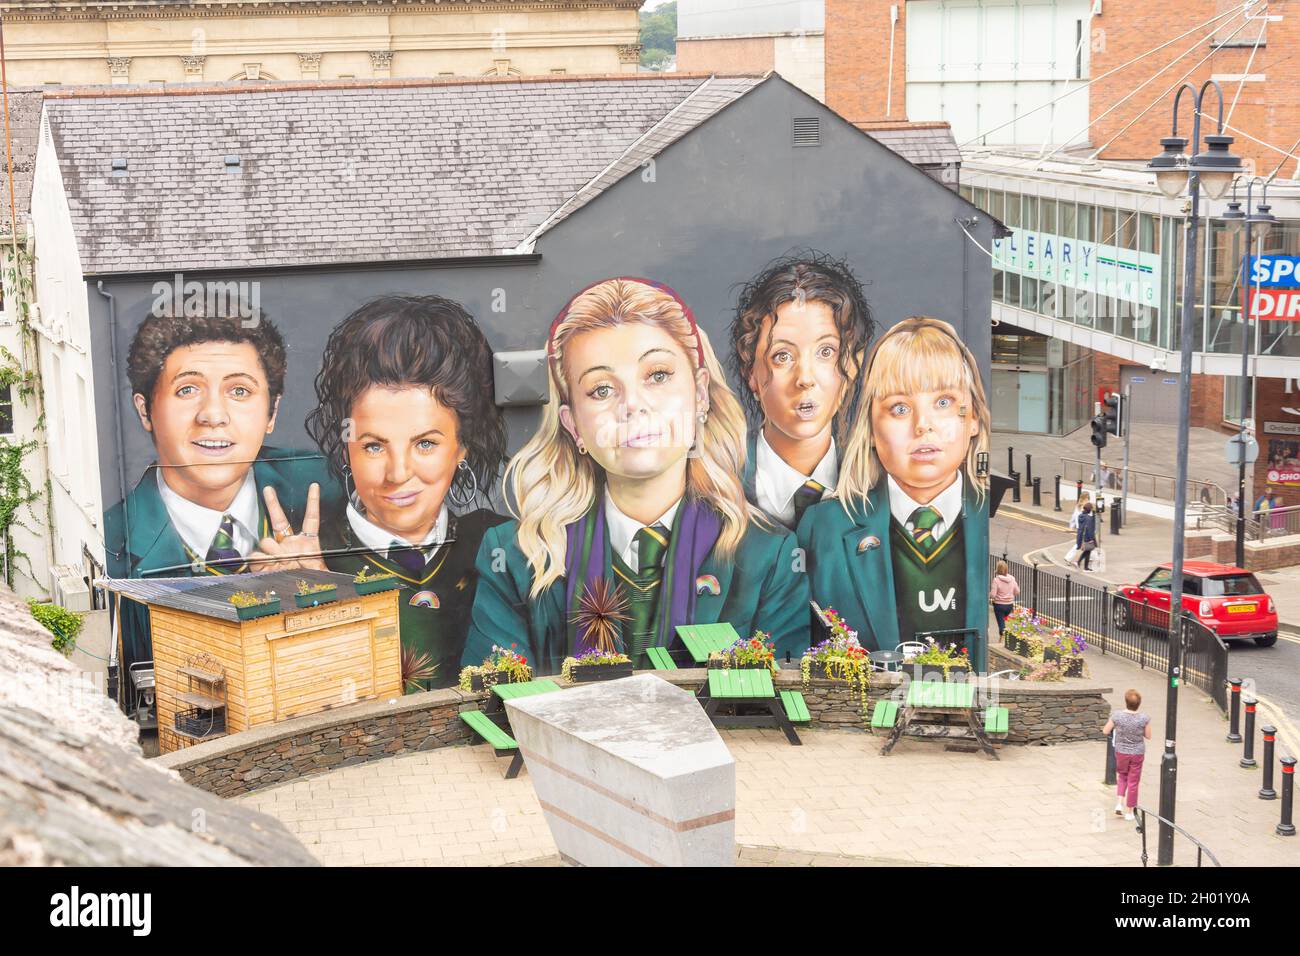 Fresque de Derry Girls (comédie télé), Orchard Street, Derry (Londonderry), Comté de Derry, Irlande du Nord,Royaume-Uni Banque D'Images